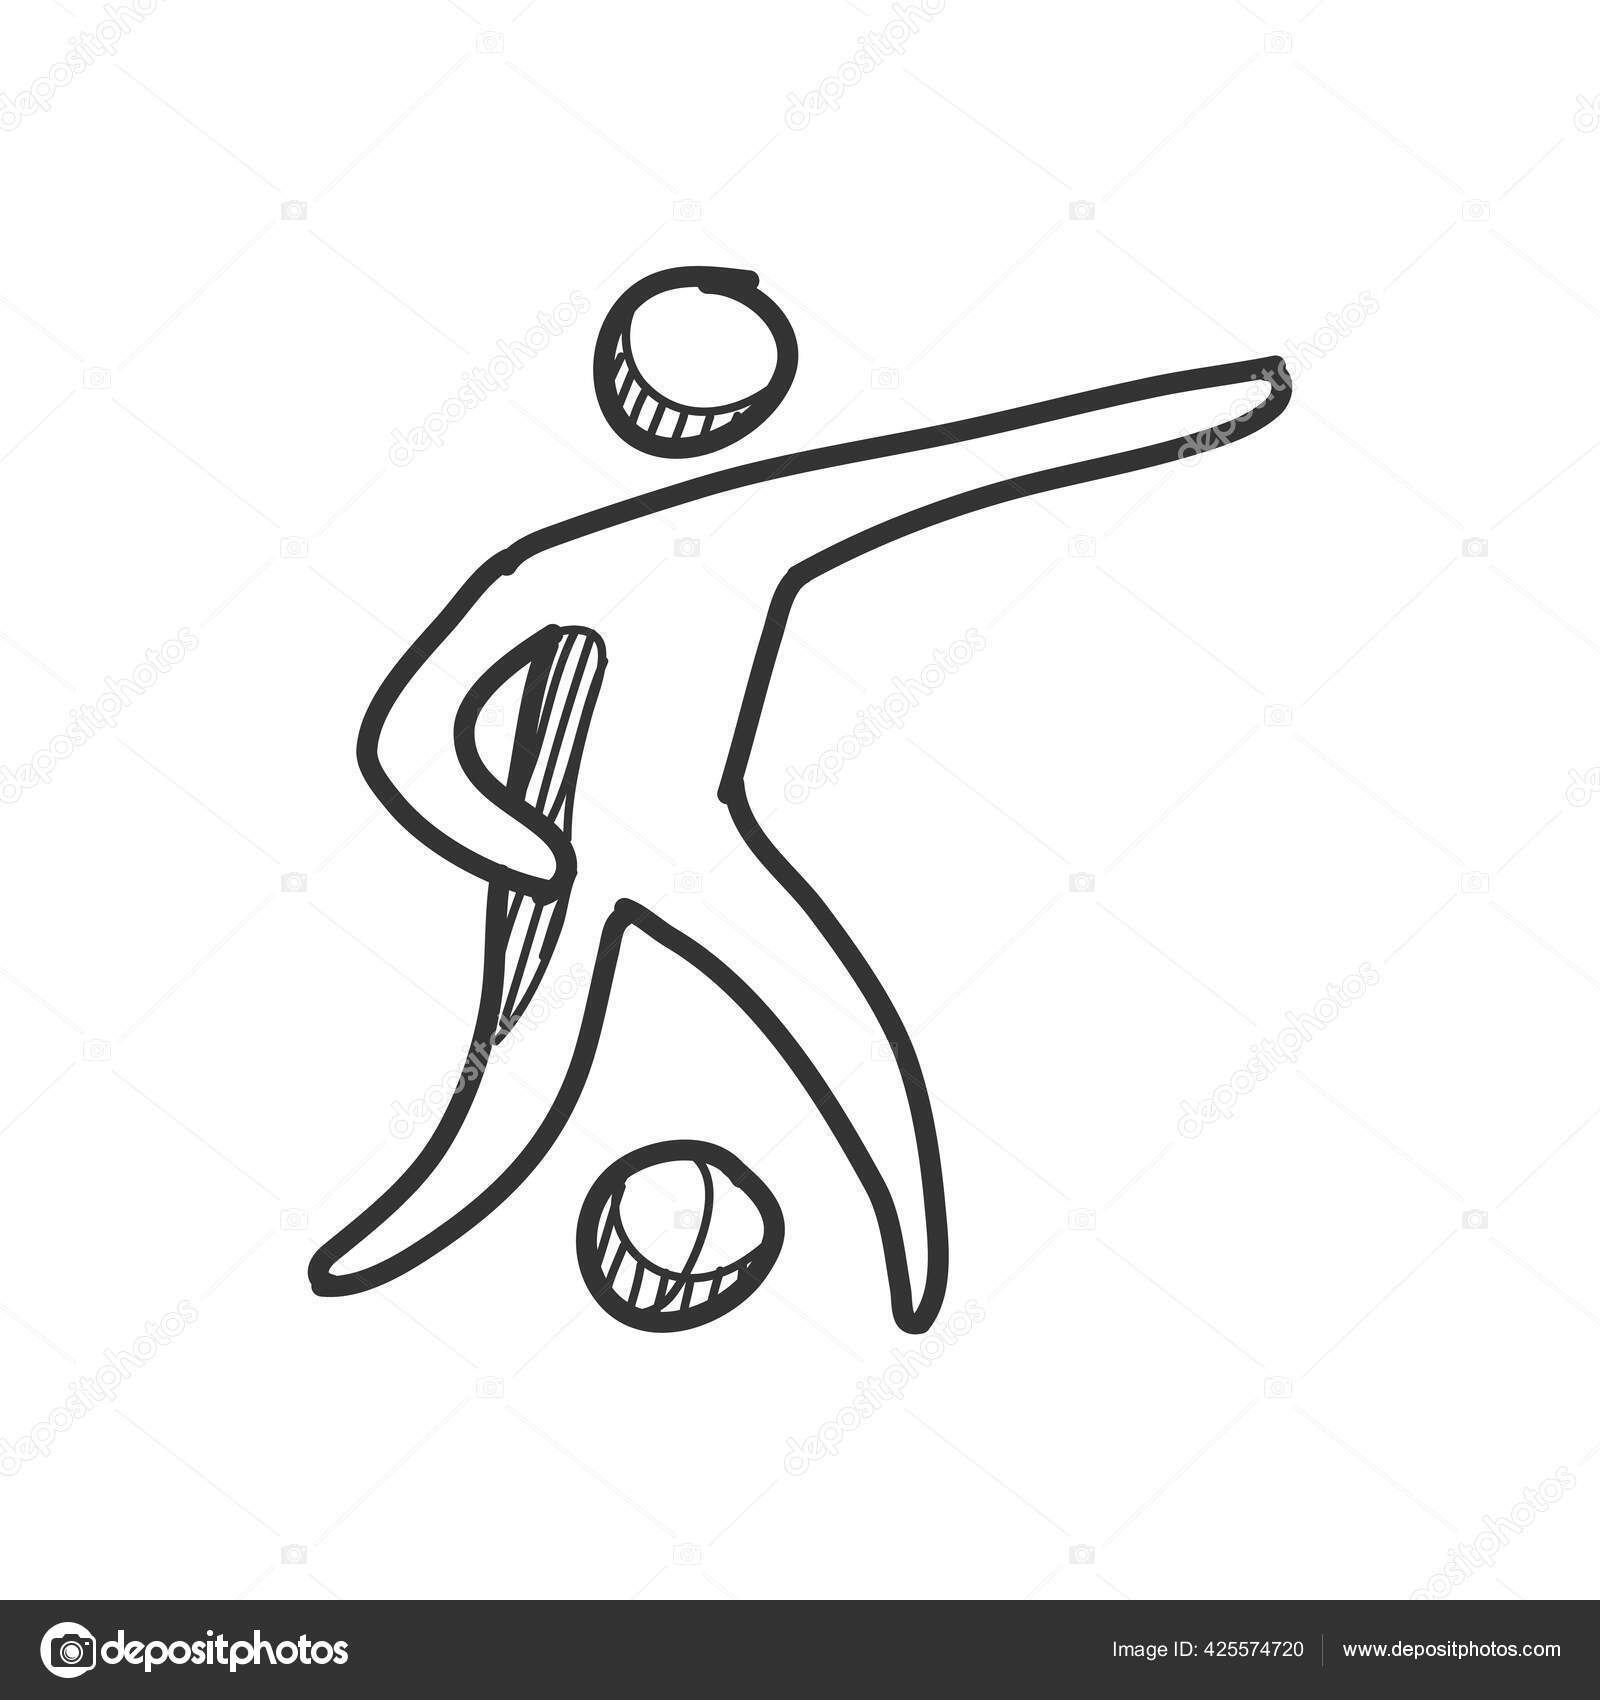 Ilustração De Jogo De Esporte De Dois Jogadores De Futebol PNG